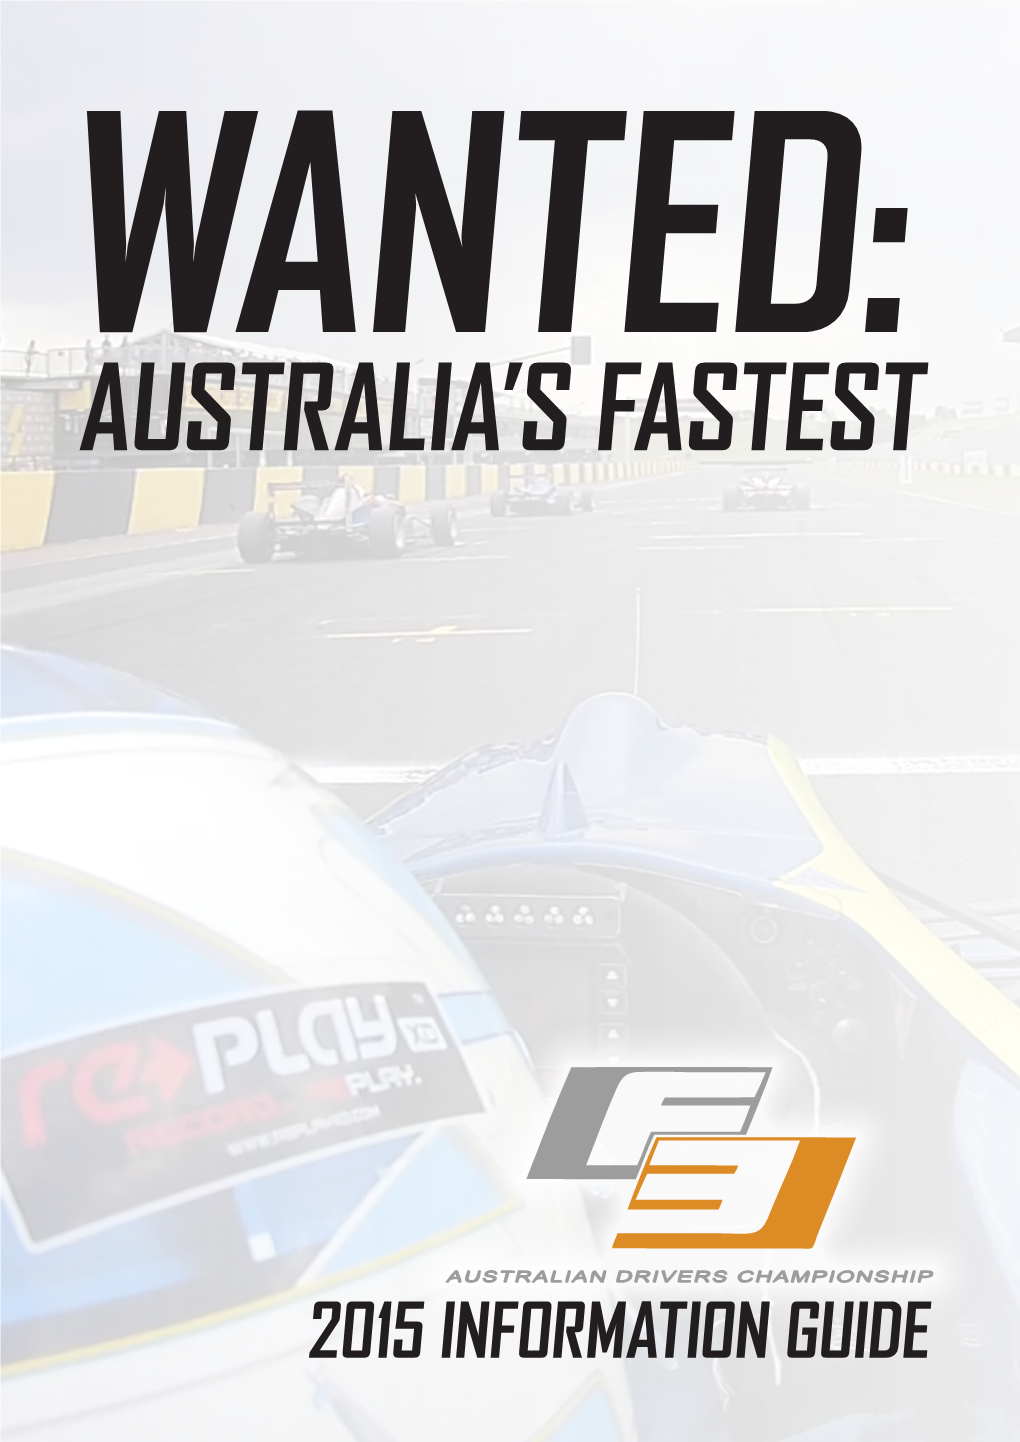 Australia's Fastest